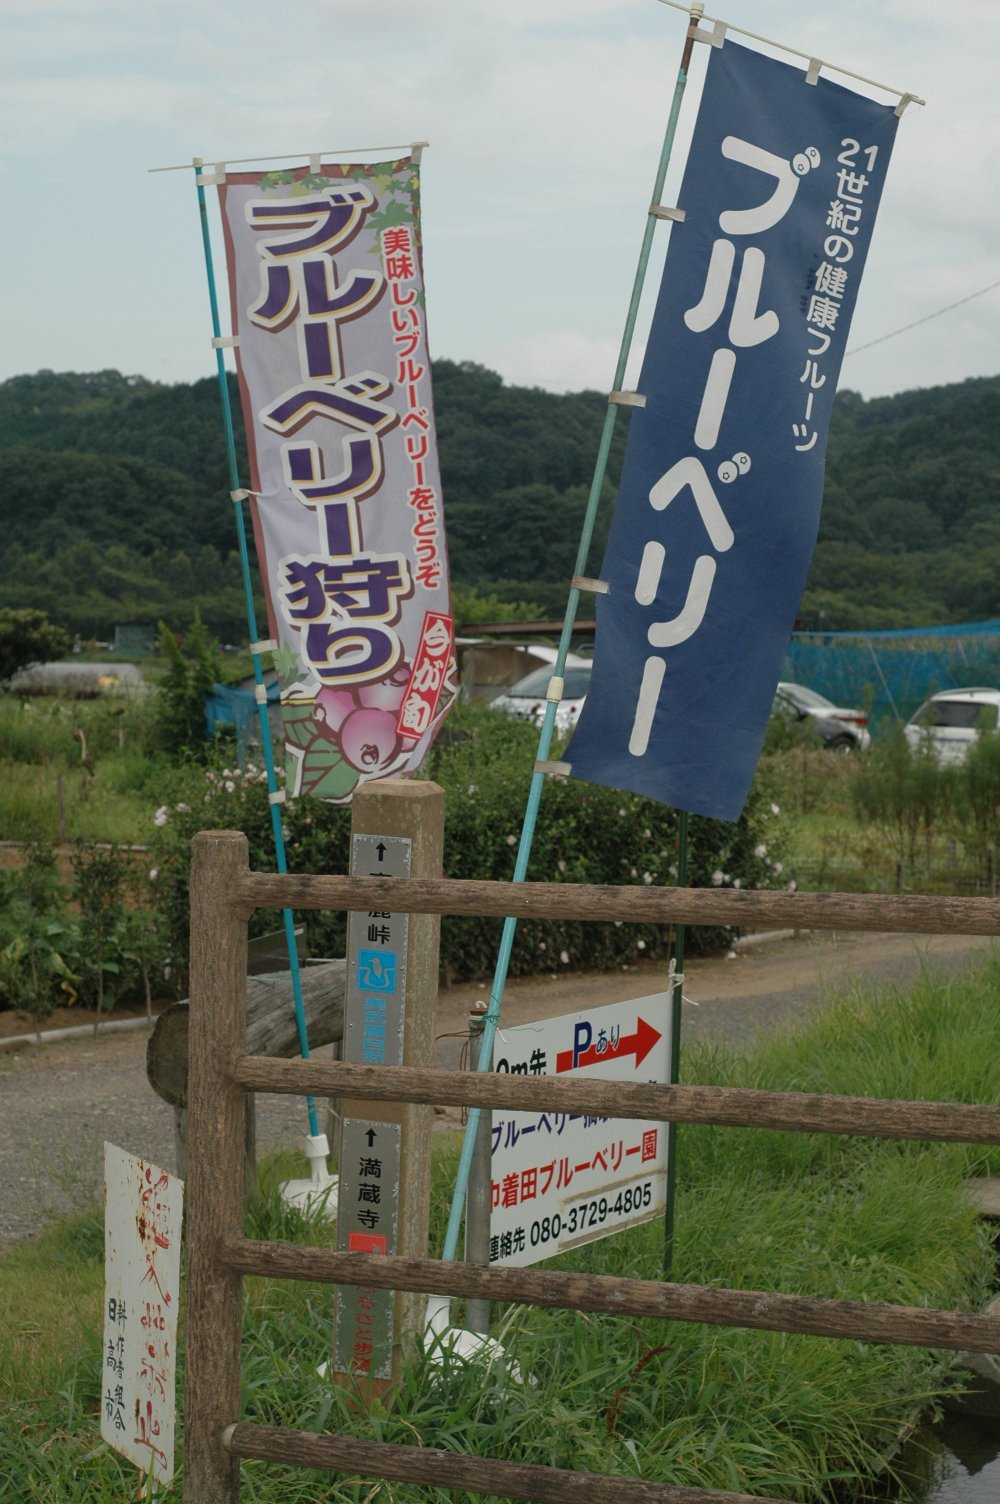 Với một khoảng phí, du khách có thể tự do chọn lựa và thưởng thức việt quất ở vườn việt quất Kato ngay tại Kinchakuda.